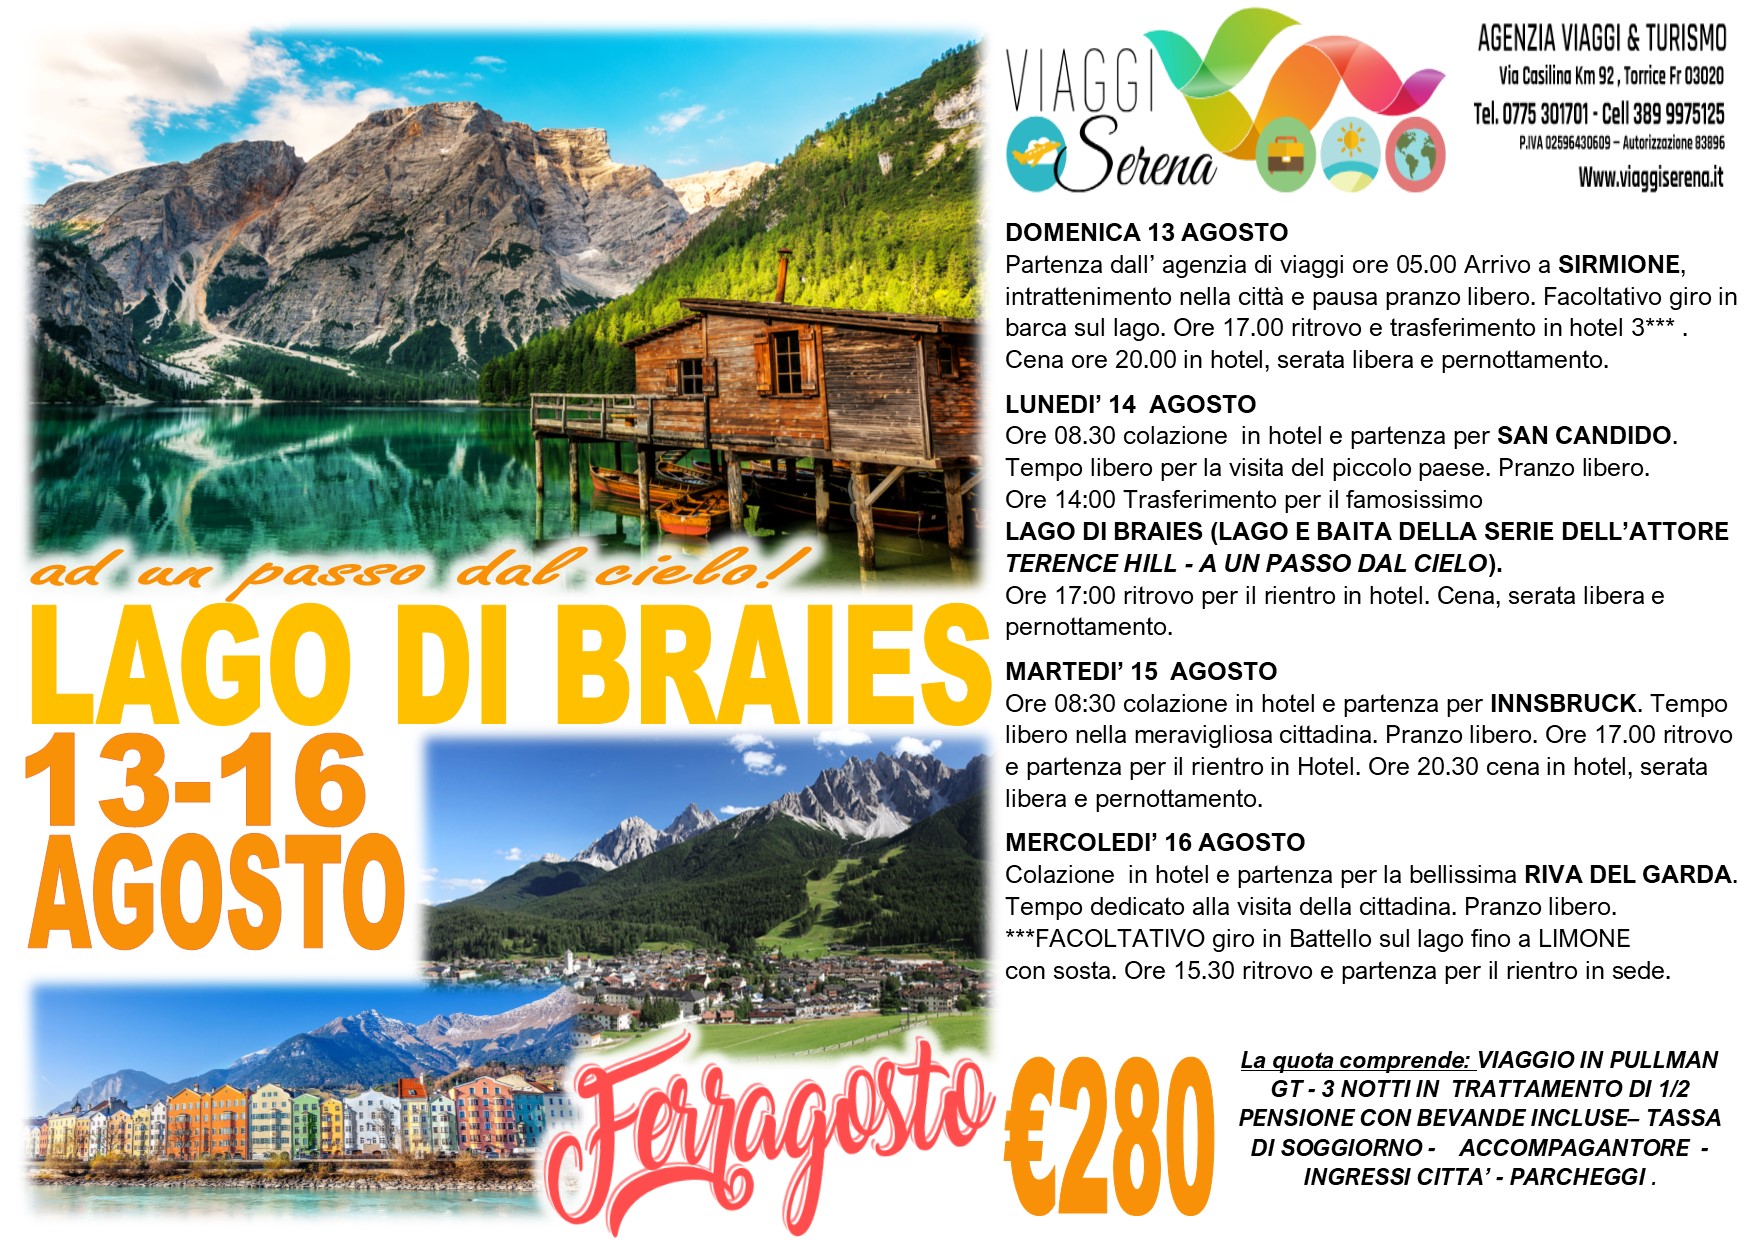 Viaggi di Gruppo: Ferragosto Lago di Braies, Sirmione , San Candido & Innsbruck 13-14-15-16 Agosto  €280,00